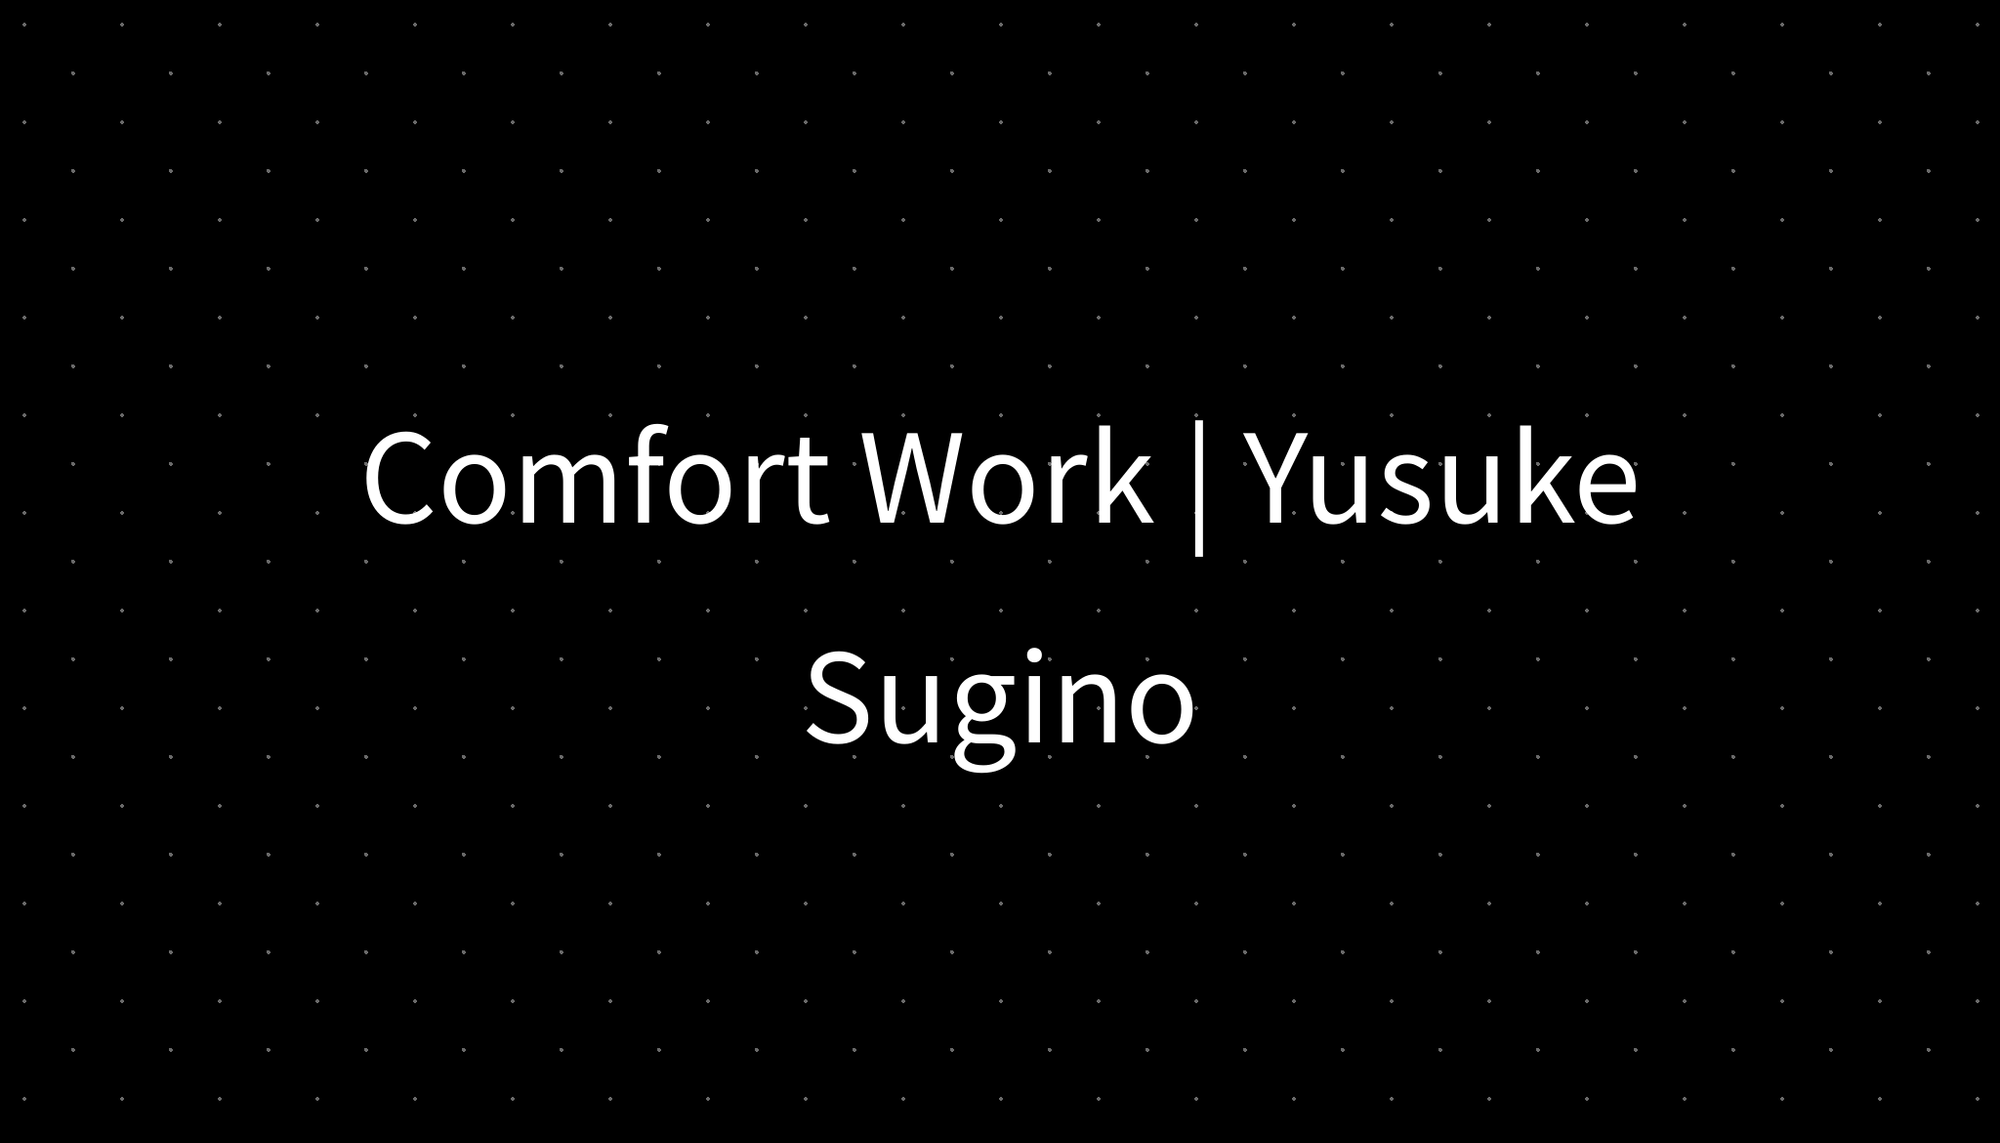 Comfort Work | Yusuke Sugino